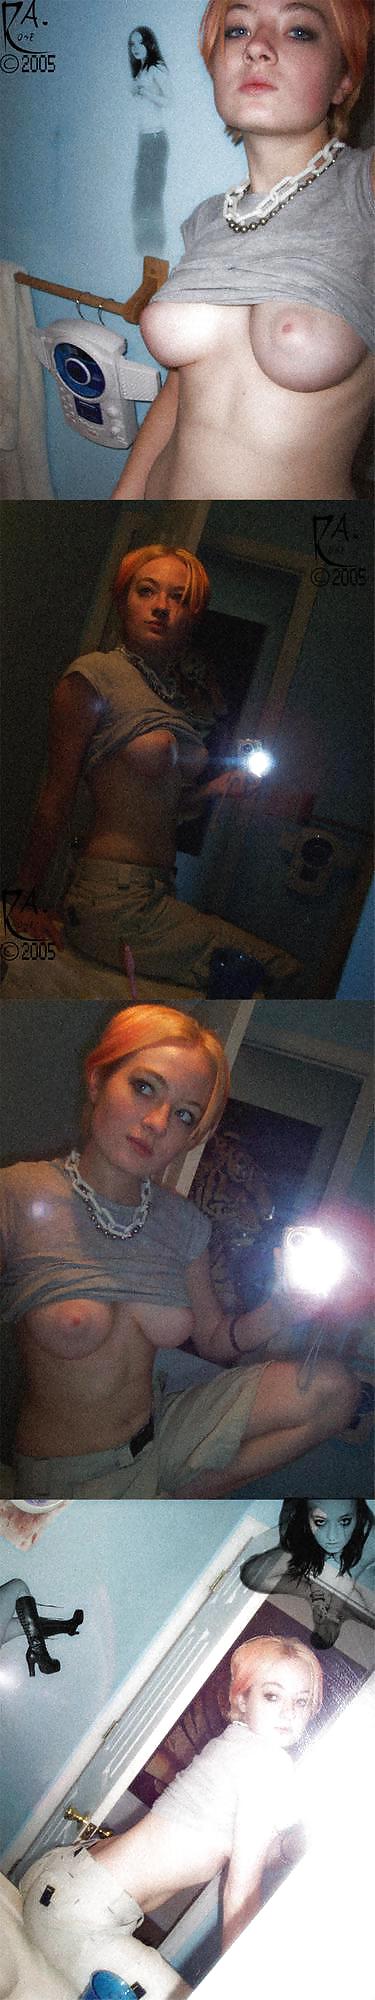 Stolen Pics - Busted Emo Slut Part 2 #16791371